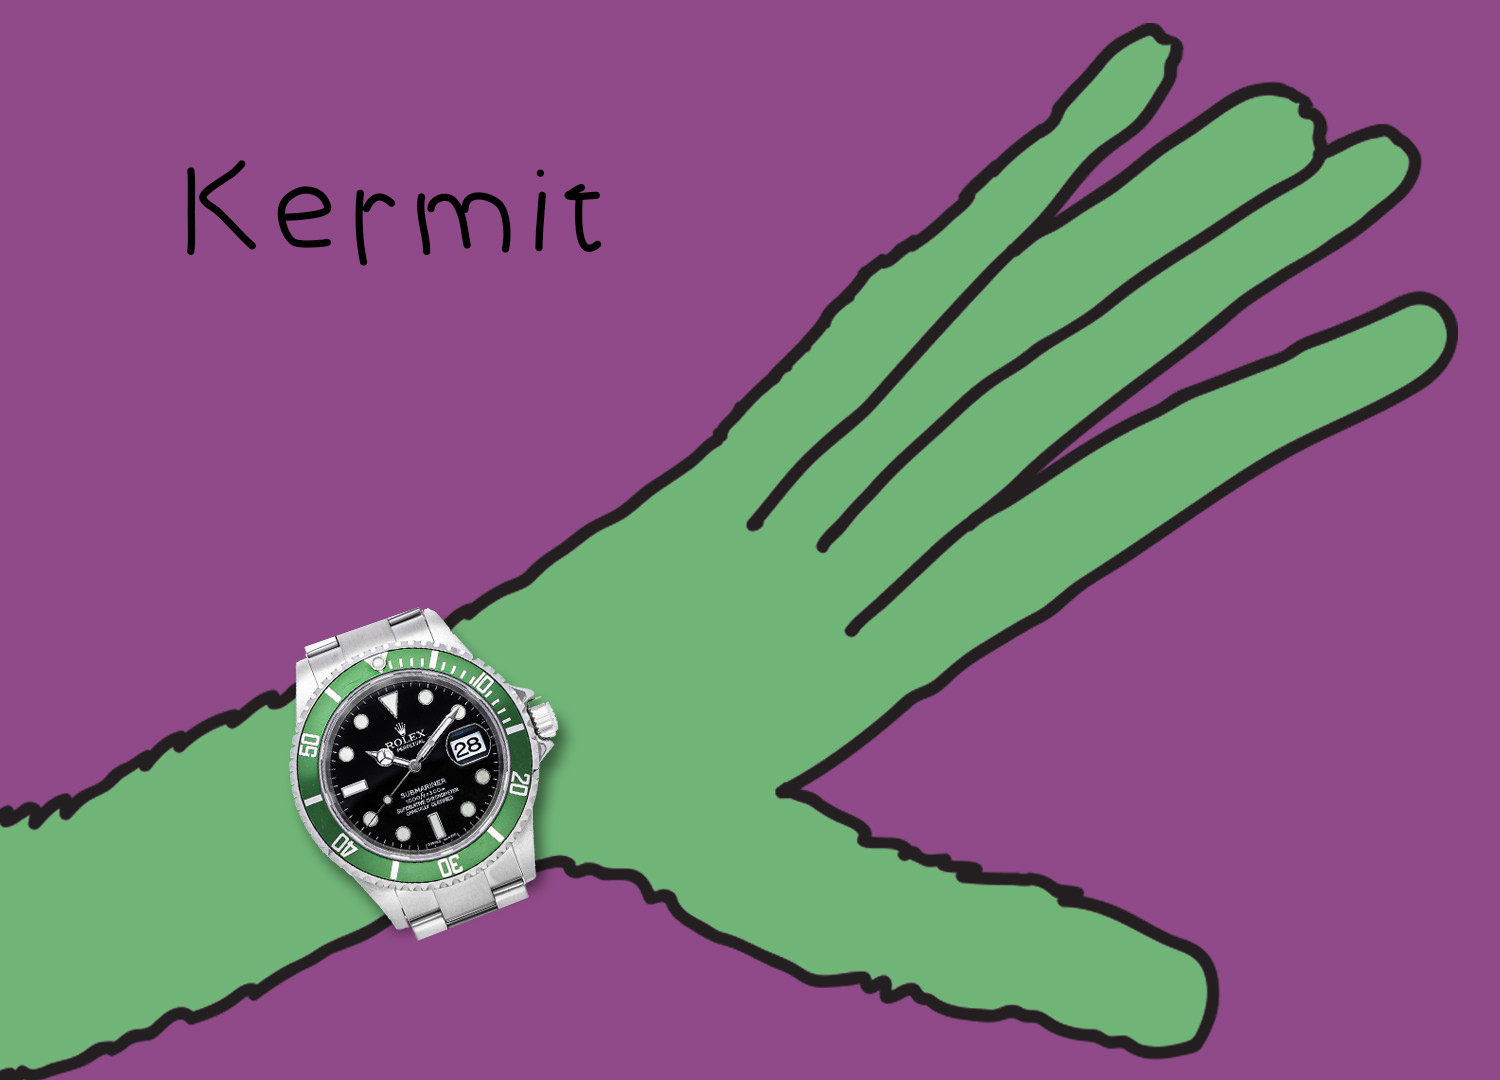 Rolex Submariner 16610LV "Kermit"